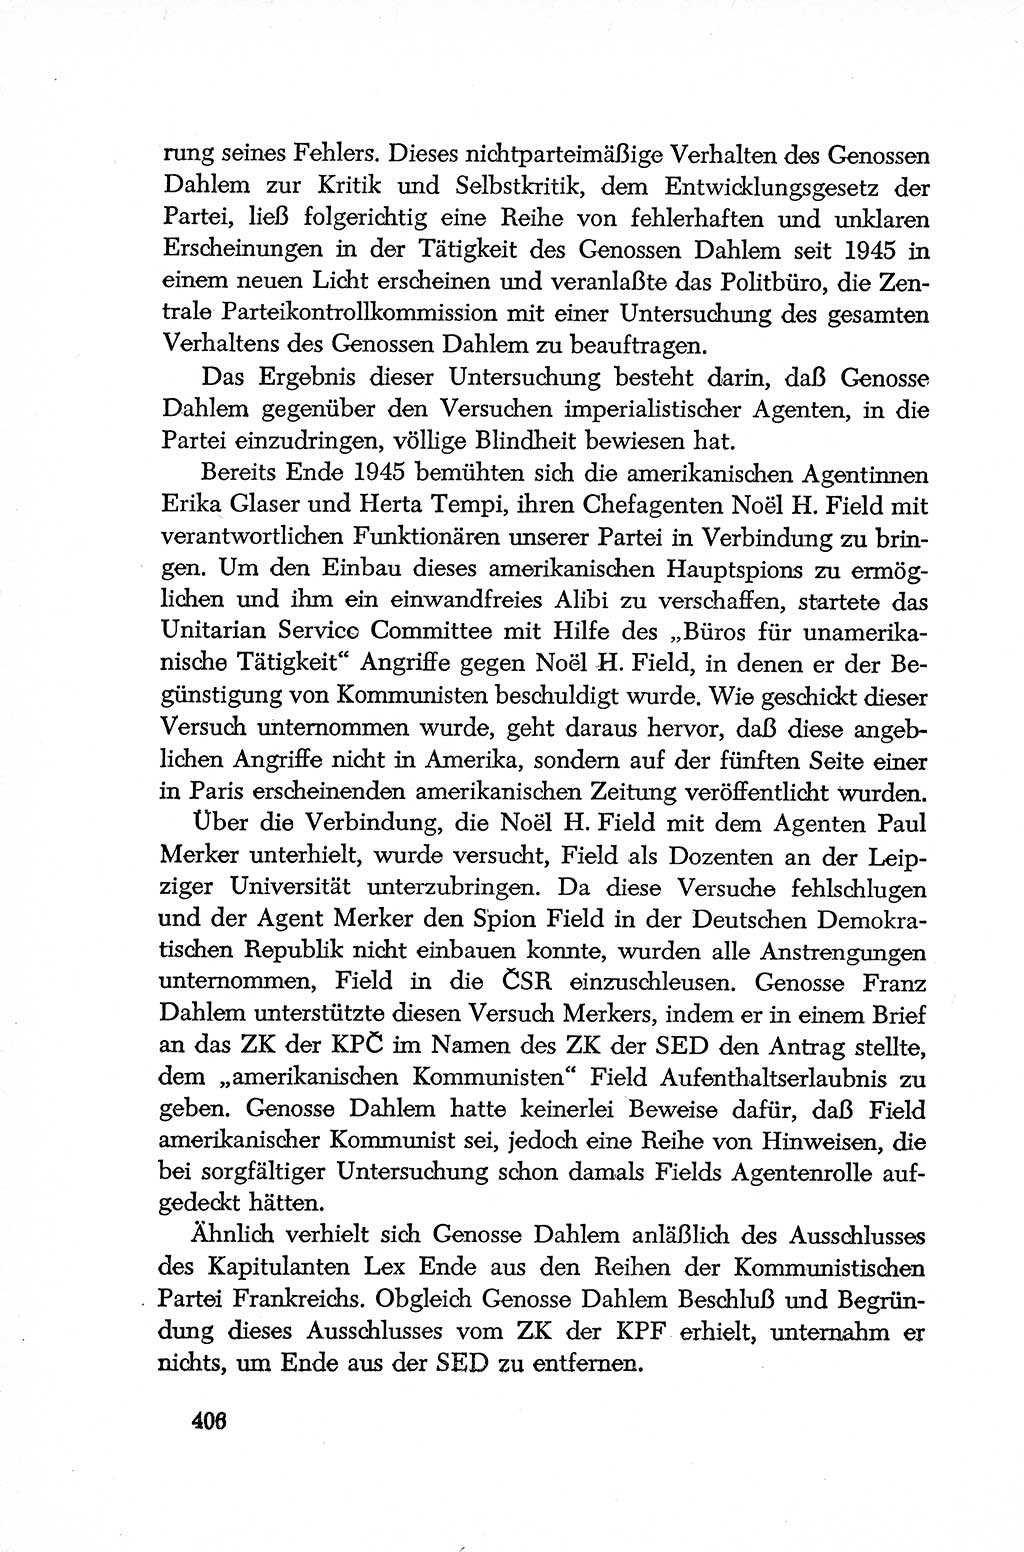 Dokumente der Sozialistischen Einheitspartei Deutschlands (SED) [Deutsche Demokratische Republik (DDR)] 1952-1953, Seite 406 (Dok. SED DDR 1952-1953, S. 406)